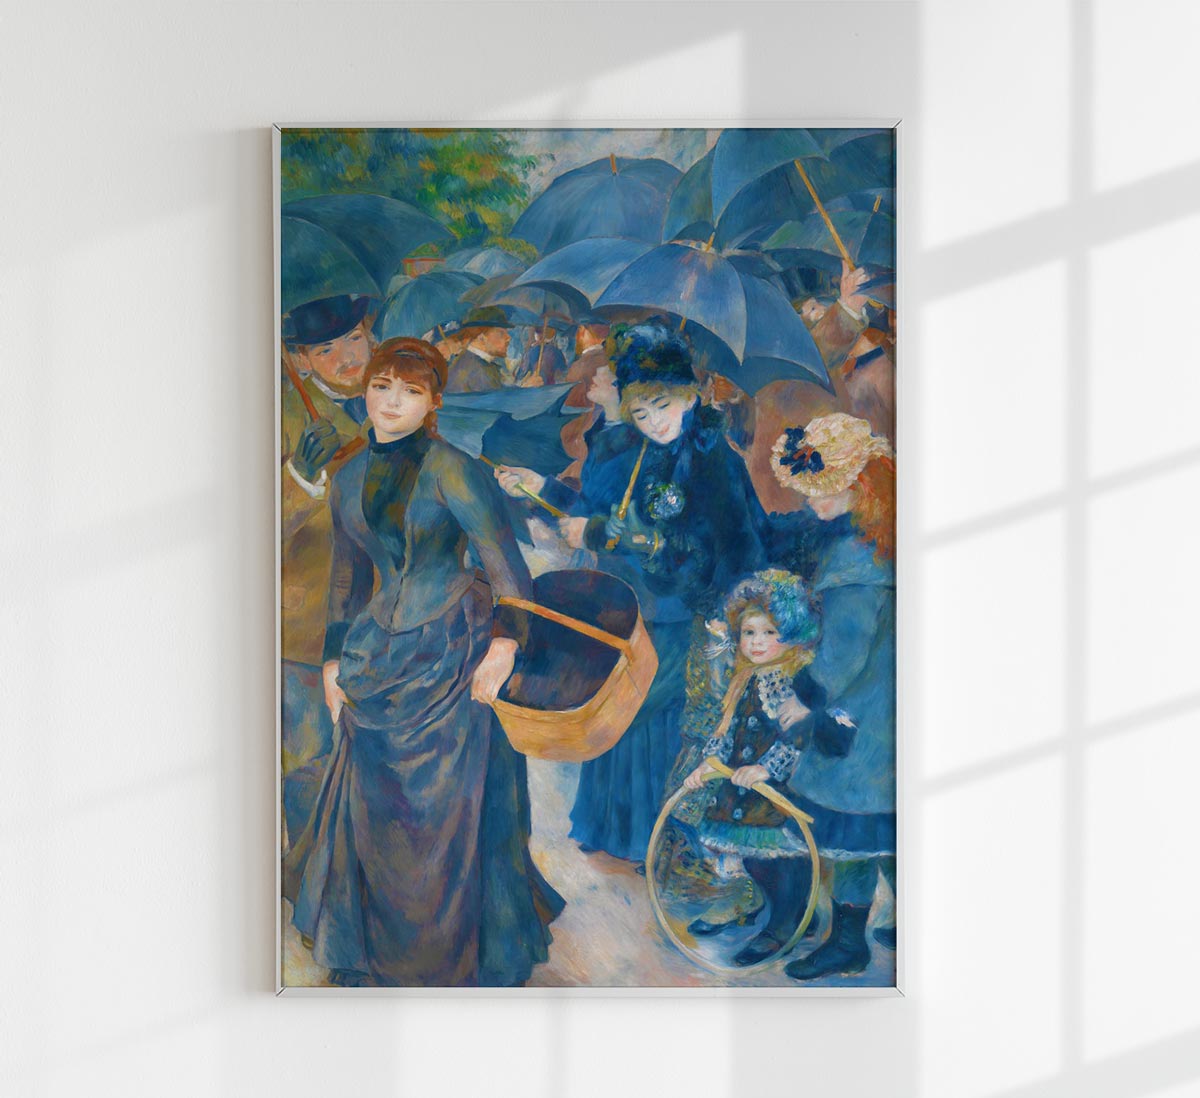 The Umbrellas Painting by Pierre Auguste Renoir